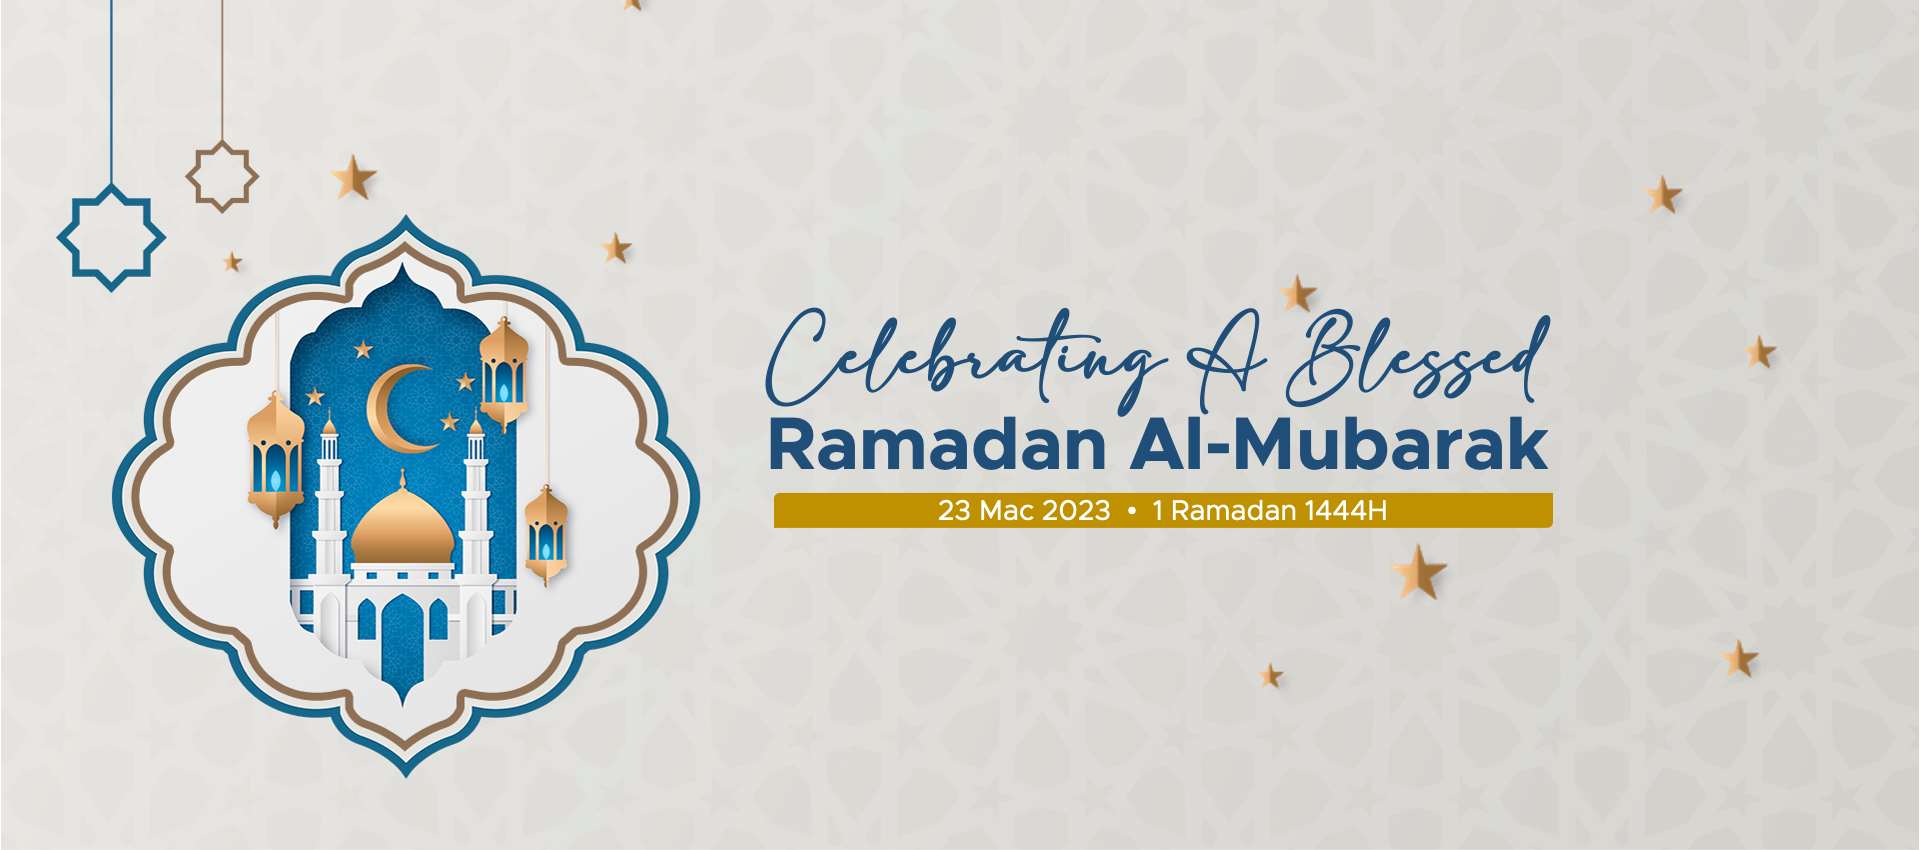 Ramadan Al-Mubarak 2023